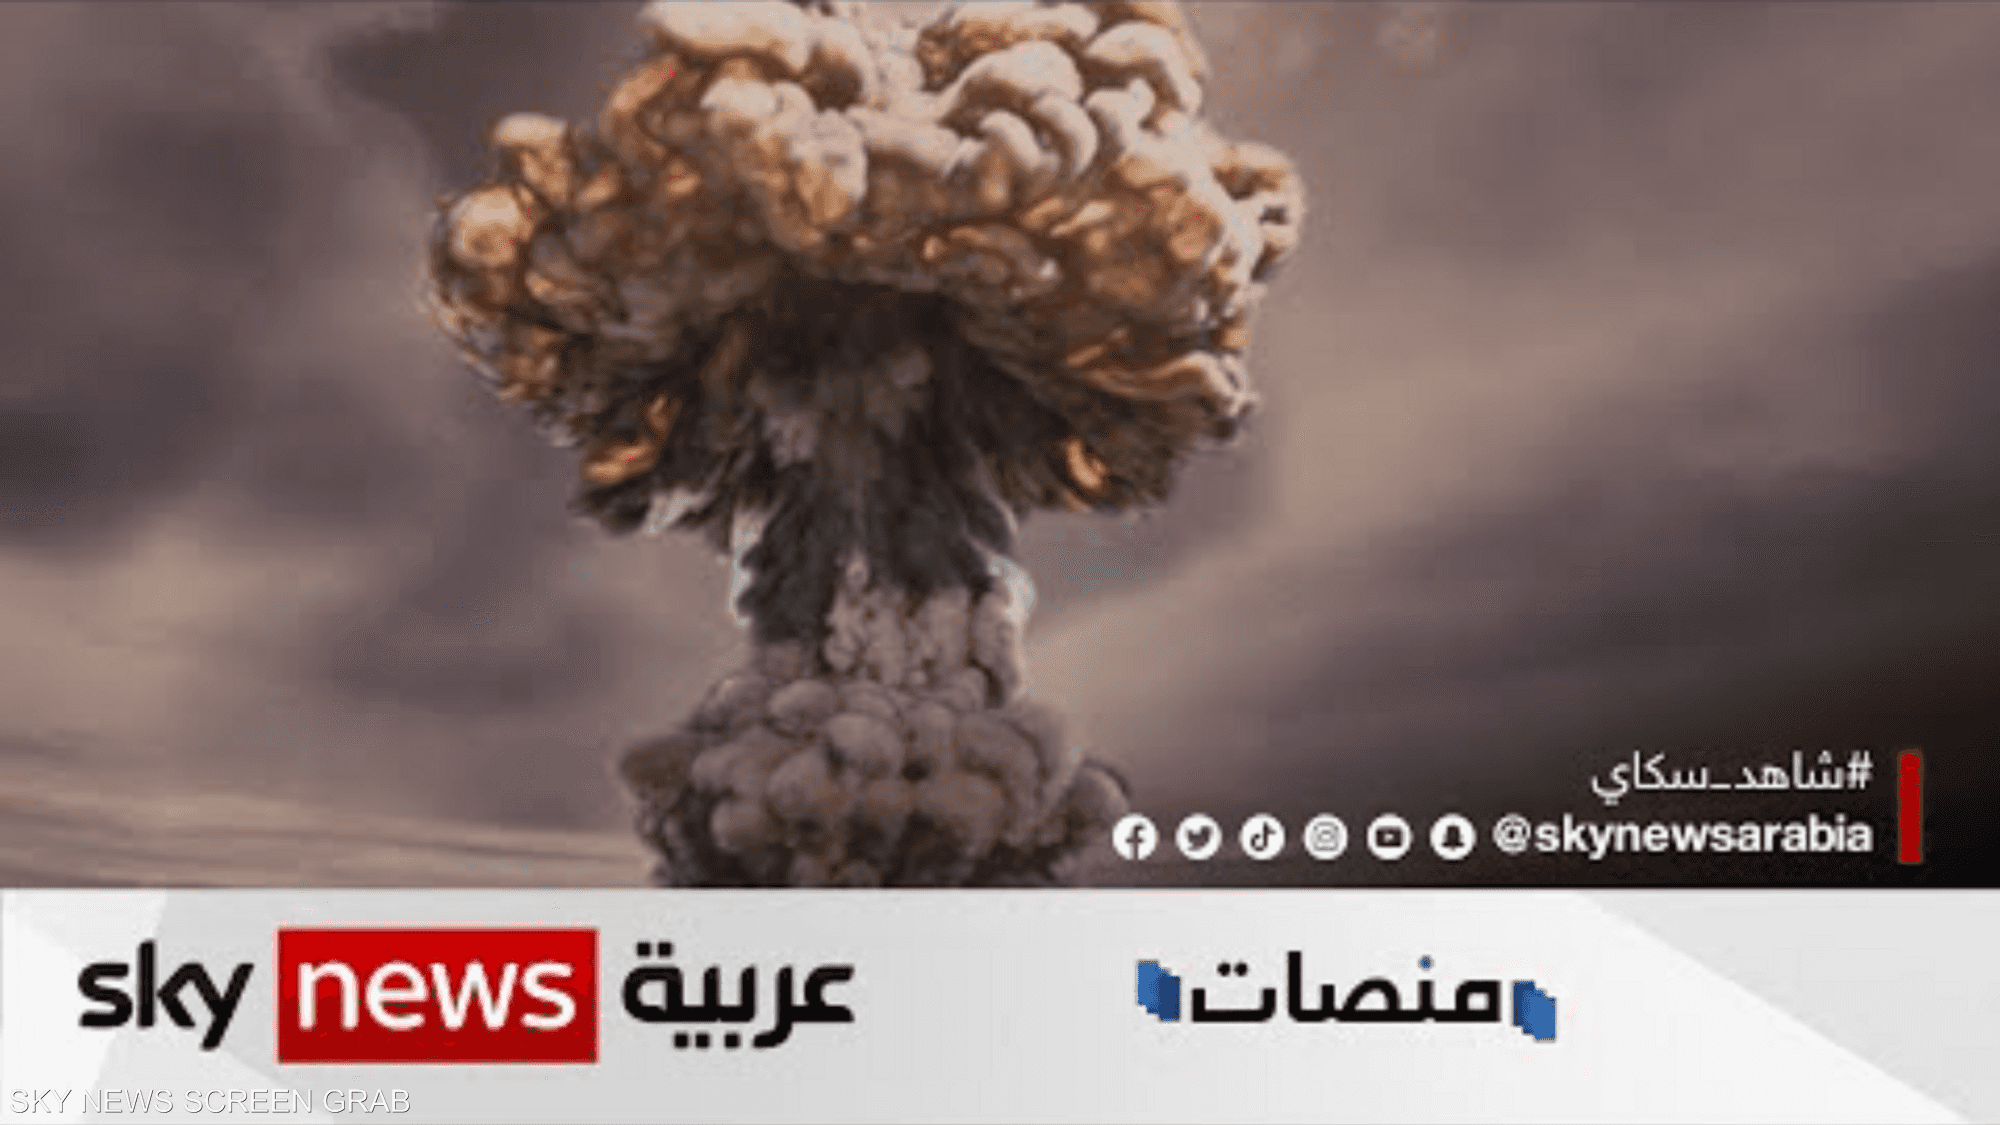 متداول عالميا: مشهد واقع افتراضي يوضح شكل انفجار قنبلة نووية